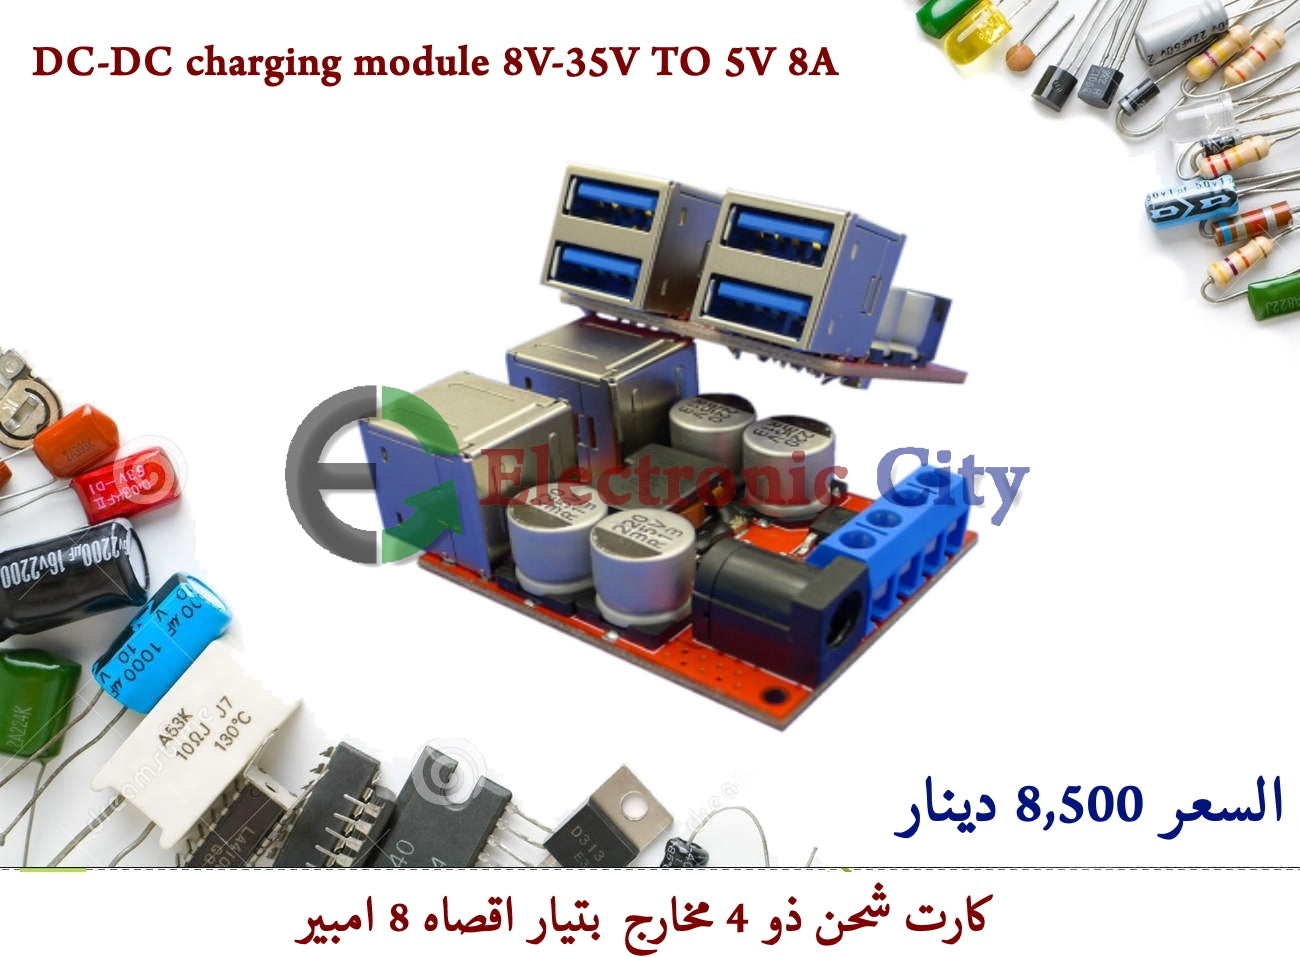 DC-DC charging module 8V-35V TO 5V 8A #G3 012627